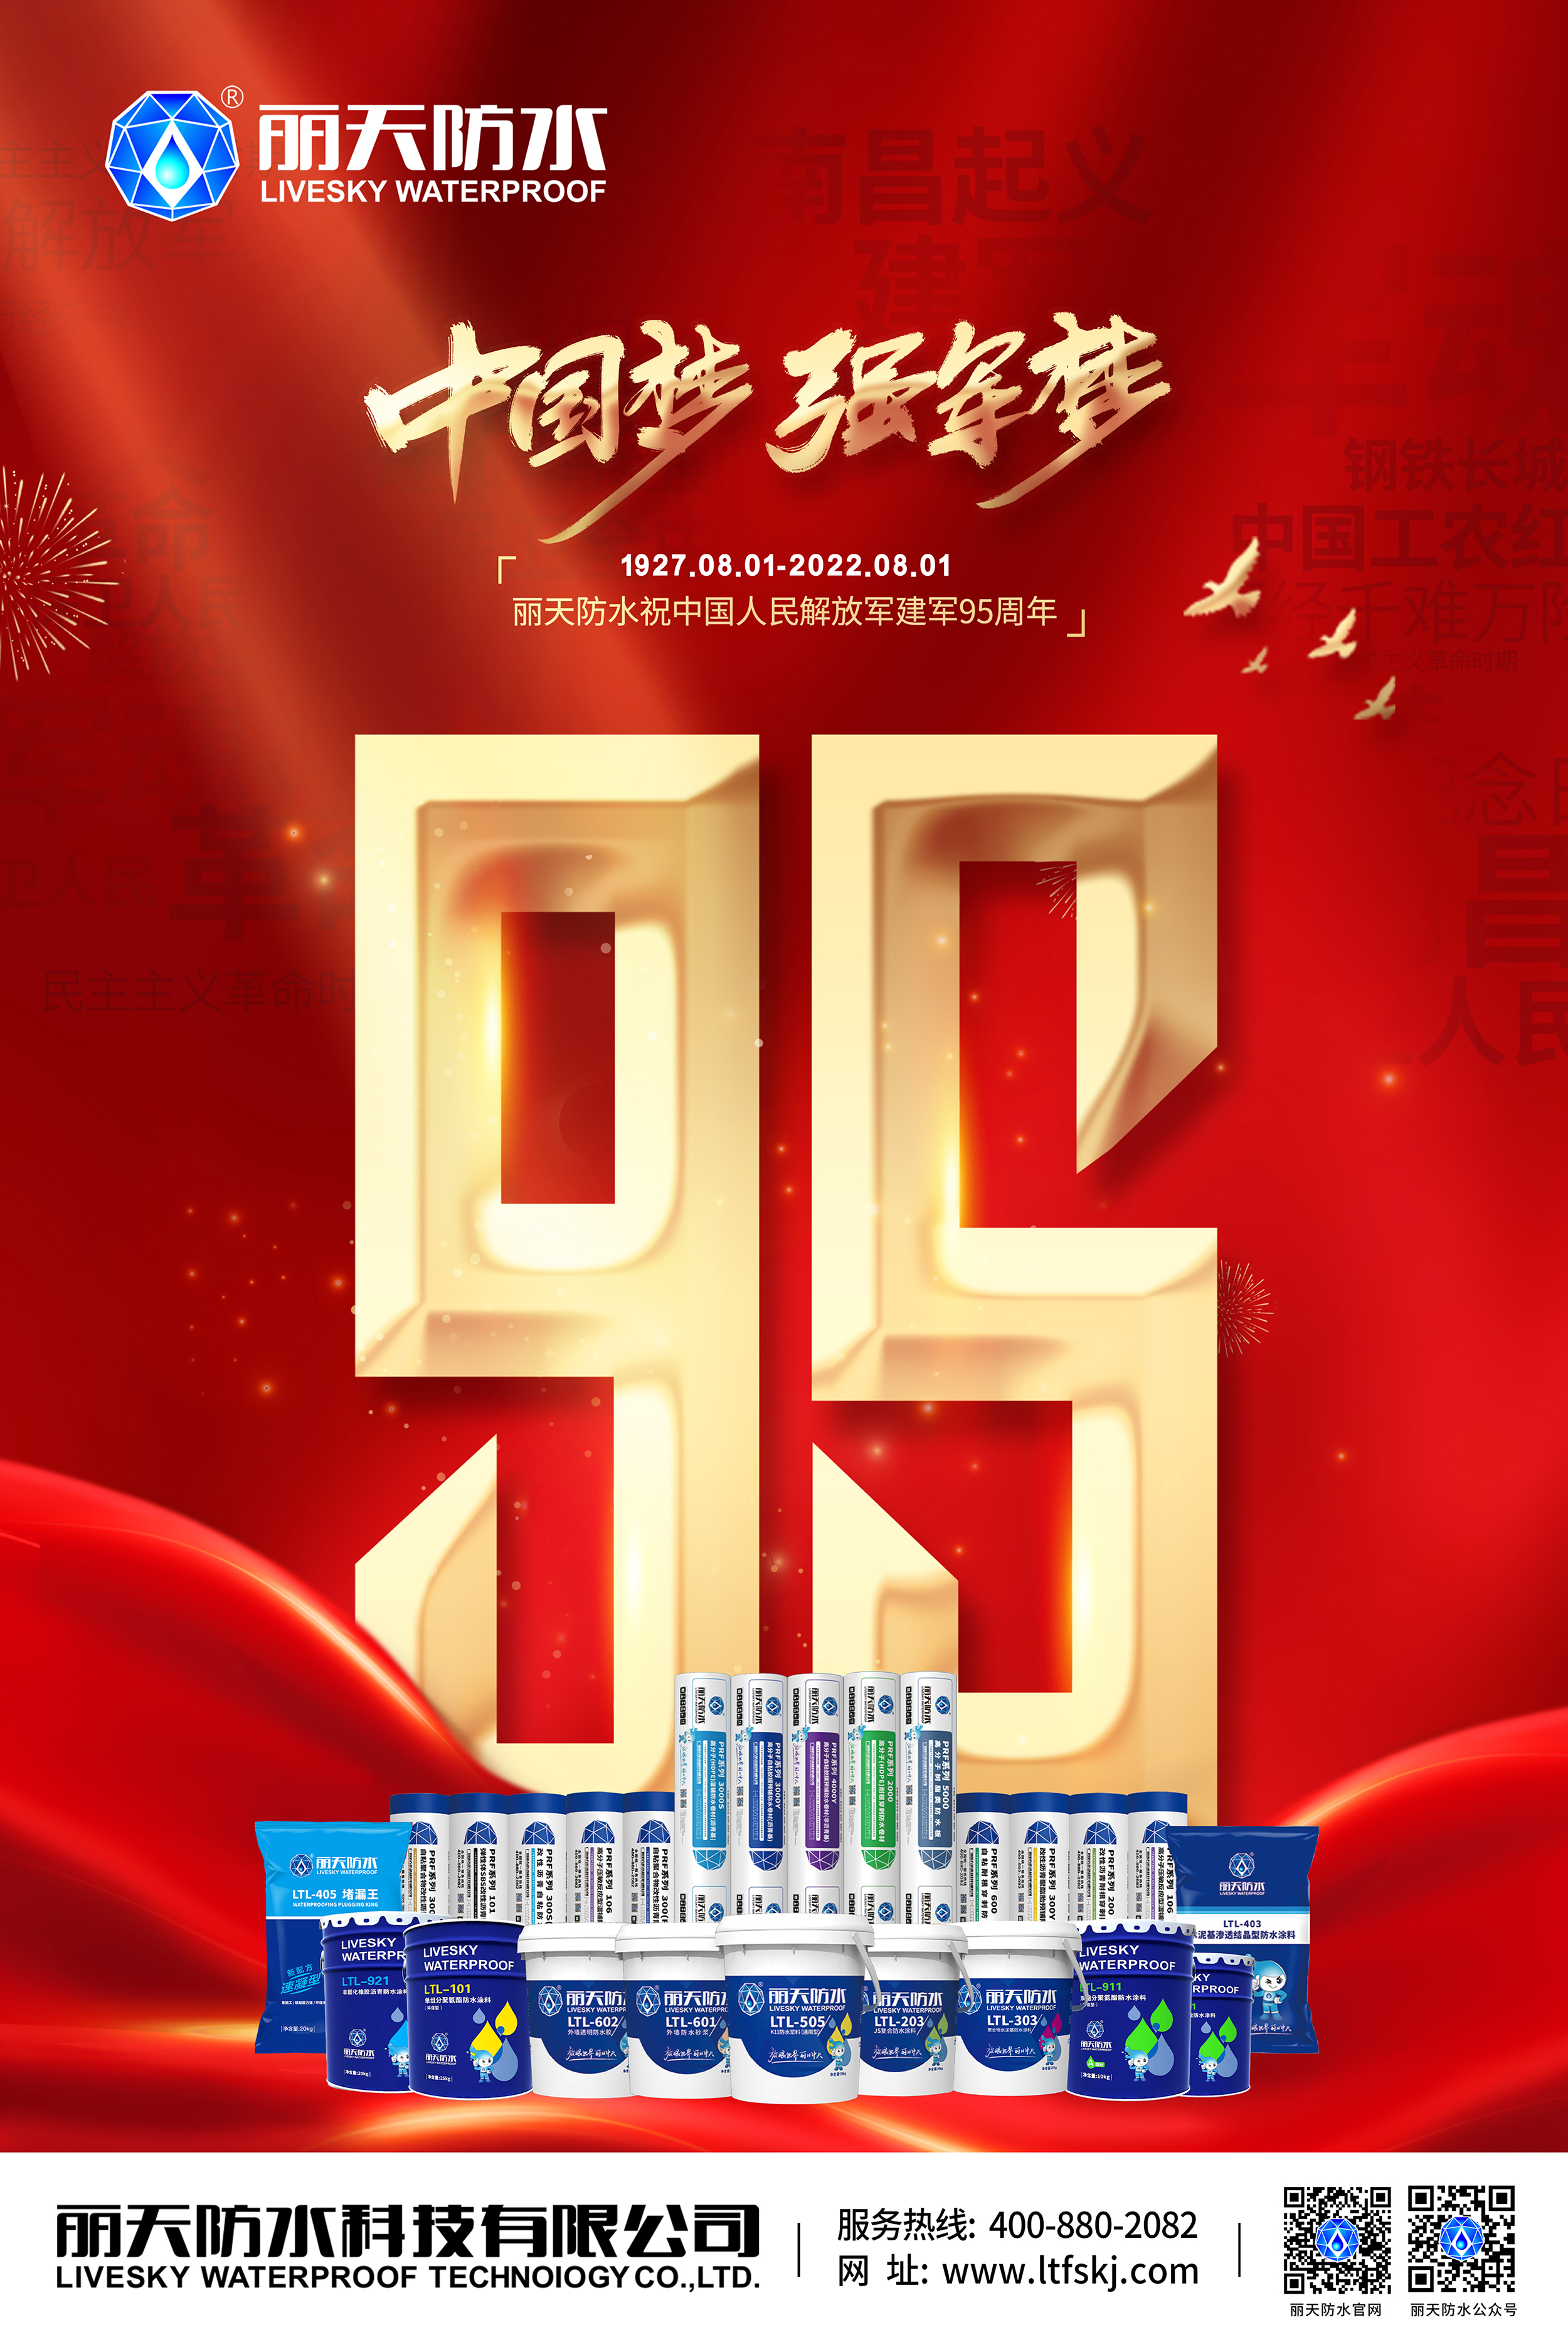 丽天防水祝贺中国人民解放军建军95周年！ 